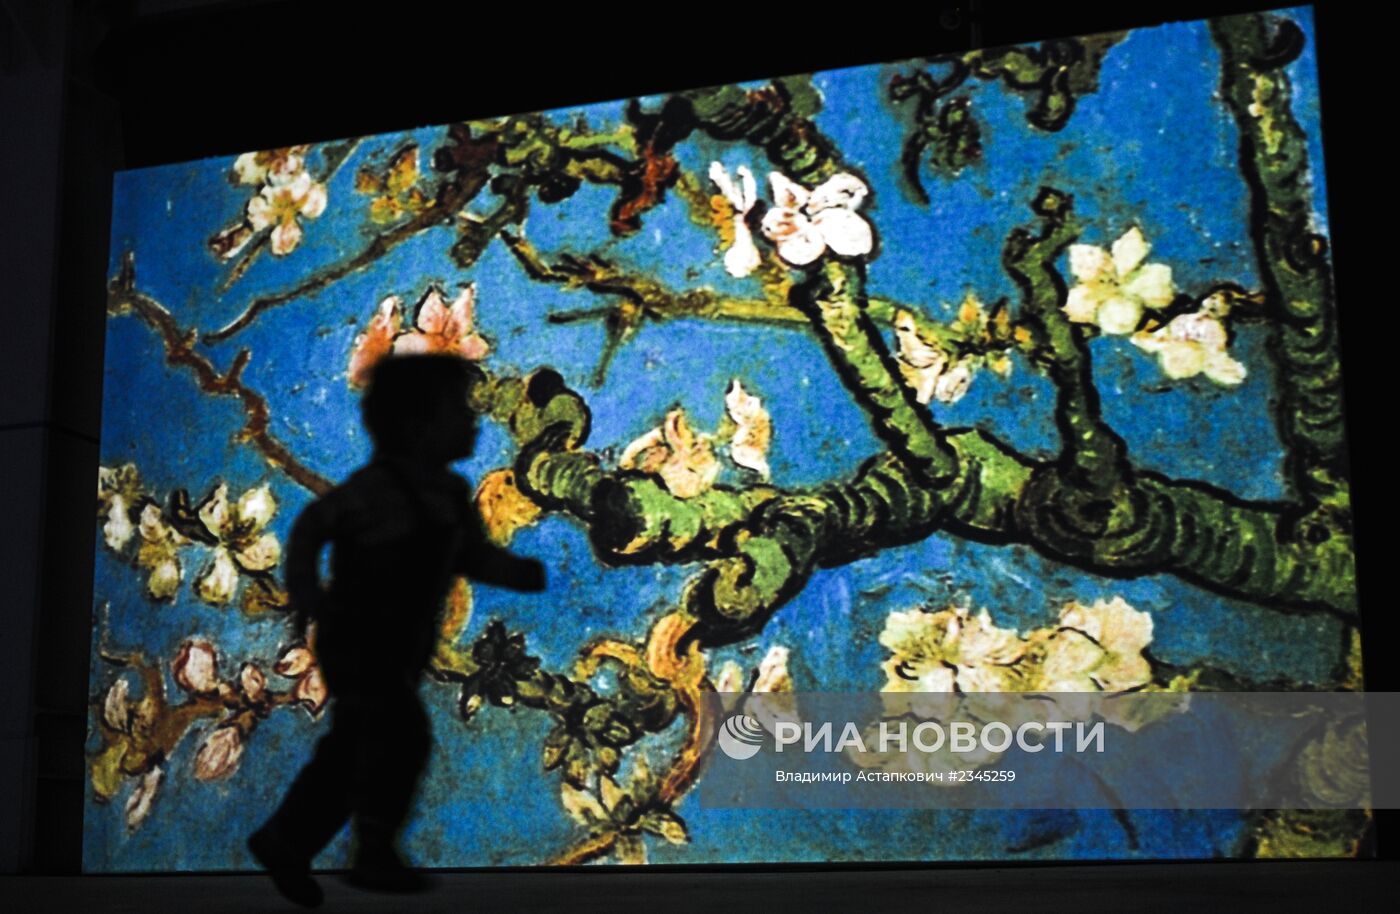 Выставка "Ван Гог. Ожившие полотна" с использованием новейшей технологии SENSORY4™